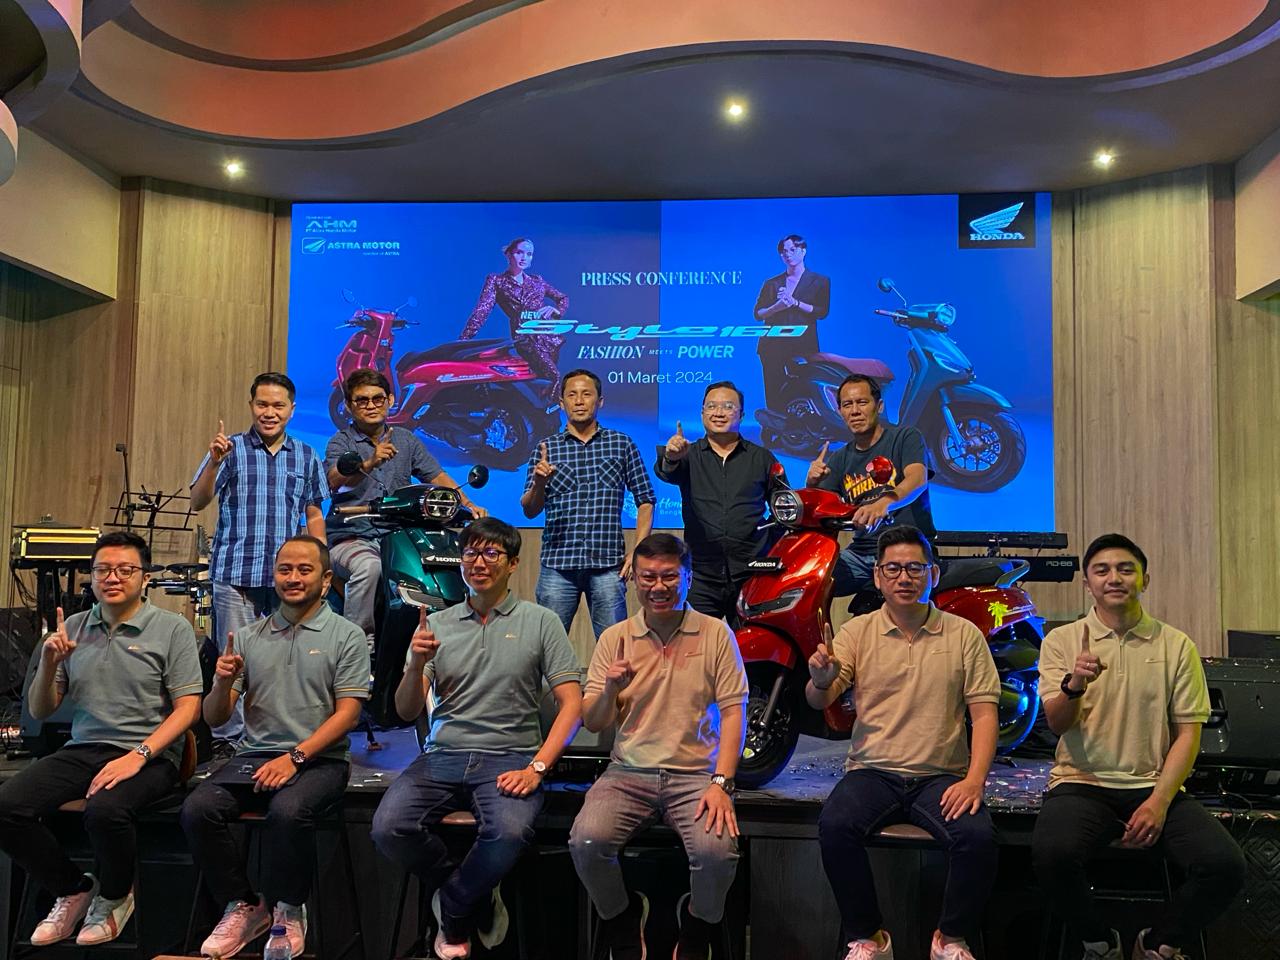 New Honda Stylo 160 Siap Jadi Primadona, Baru Dilaunching Sudah Lebih 30 Unit Dipesan di Bengkulu